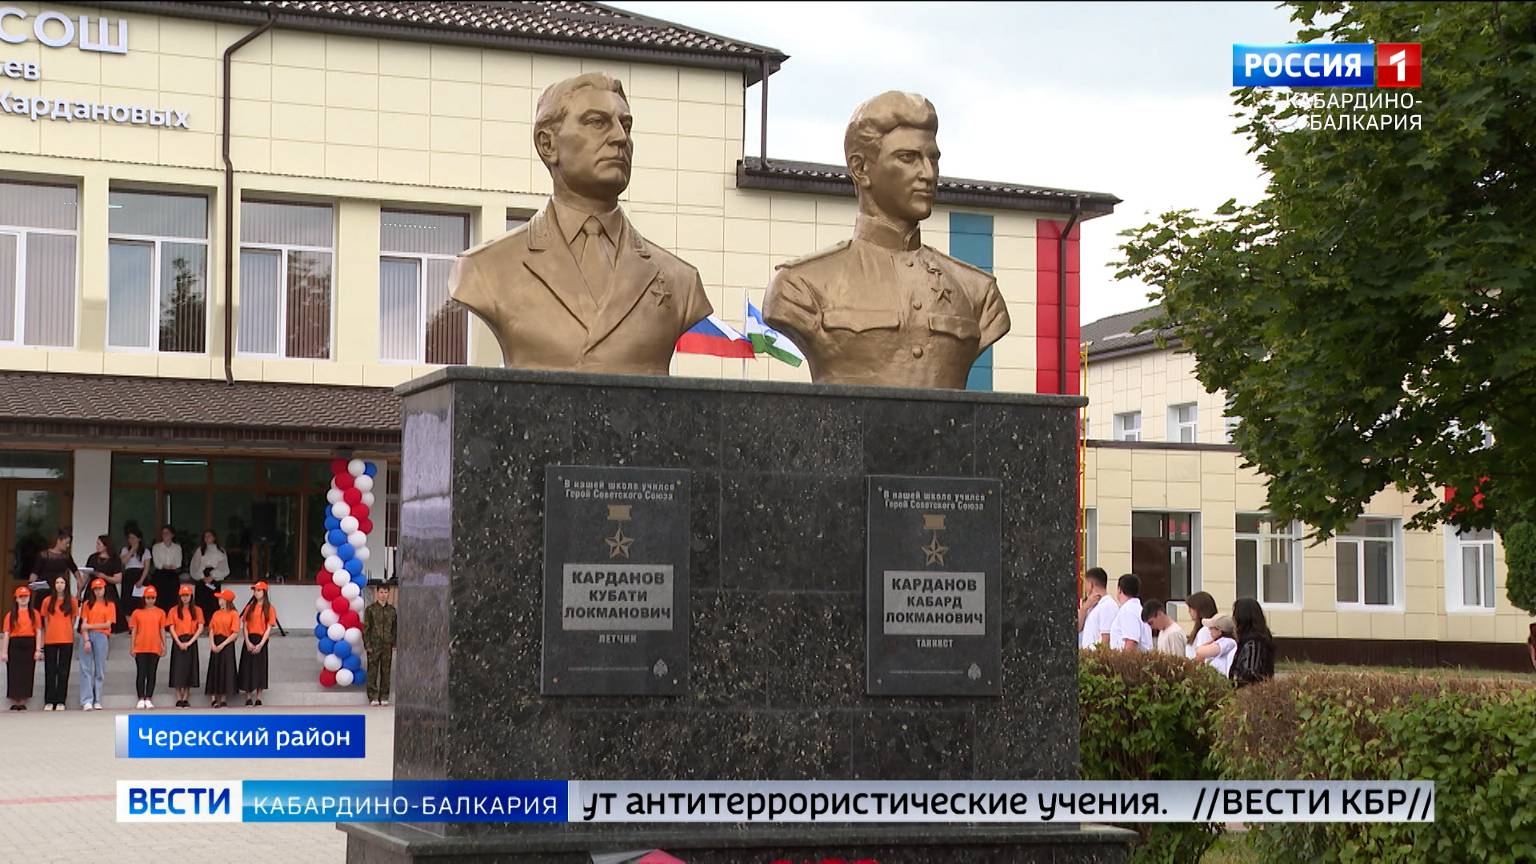 В Аушигере открыли обновленный памятник братьям Кубати и Кабарду Кардановым